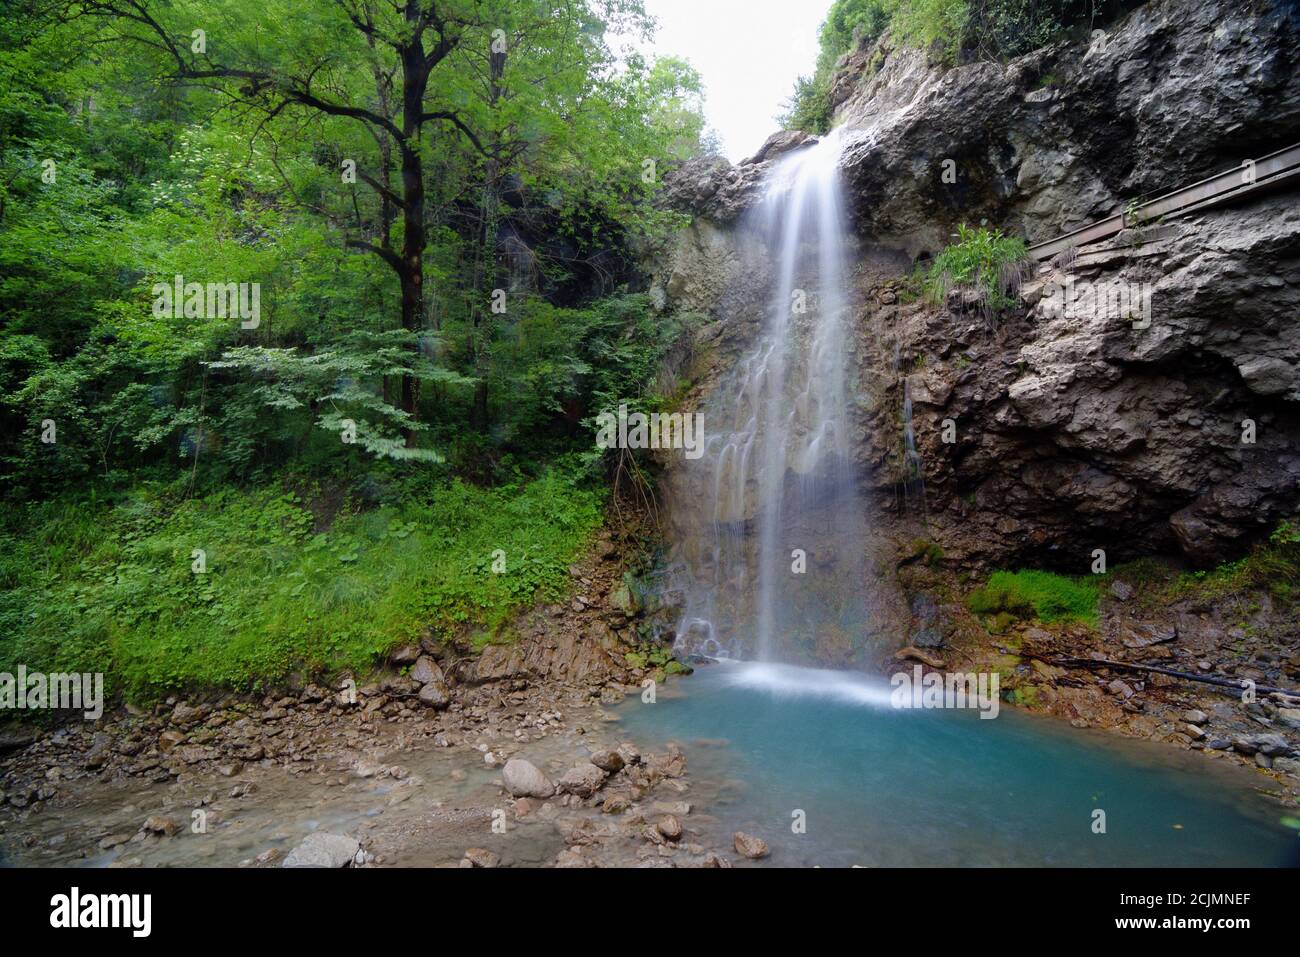 Wasserfall am Asse River Blieux im Verdon Regional Park Naturschutzgebiet Alpes-de-Haute-Provence Frankreich Stockfoto